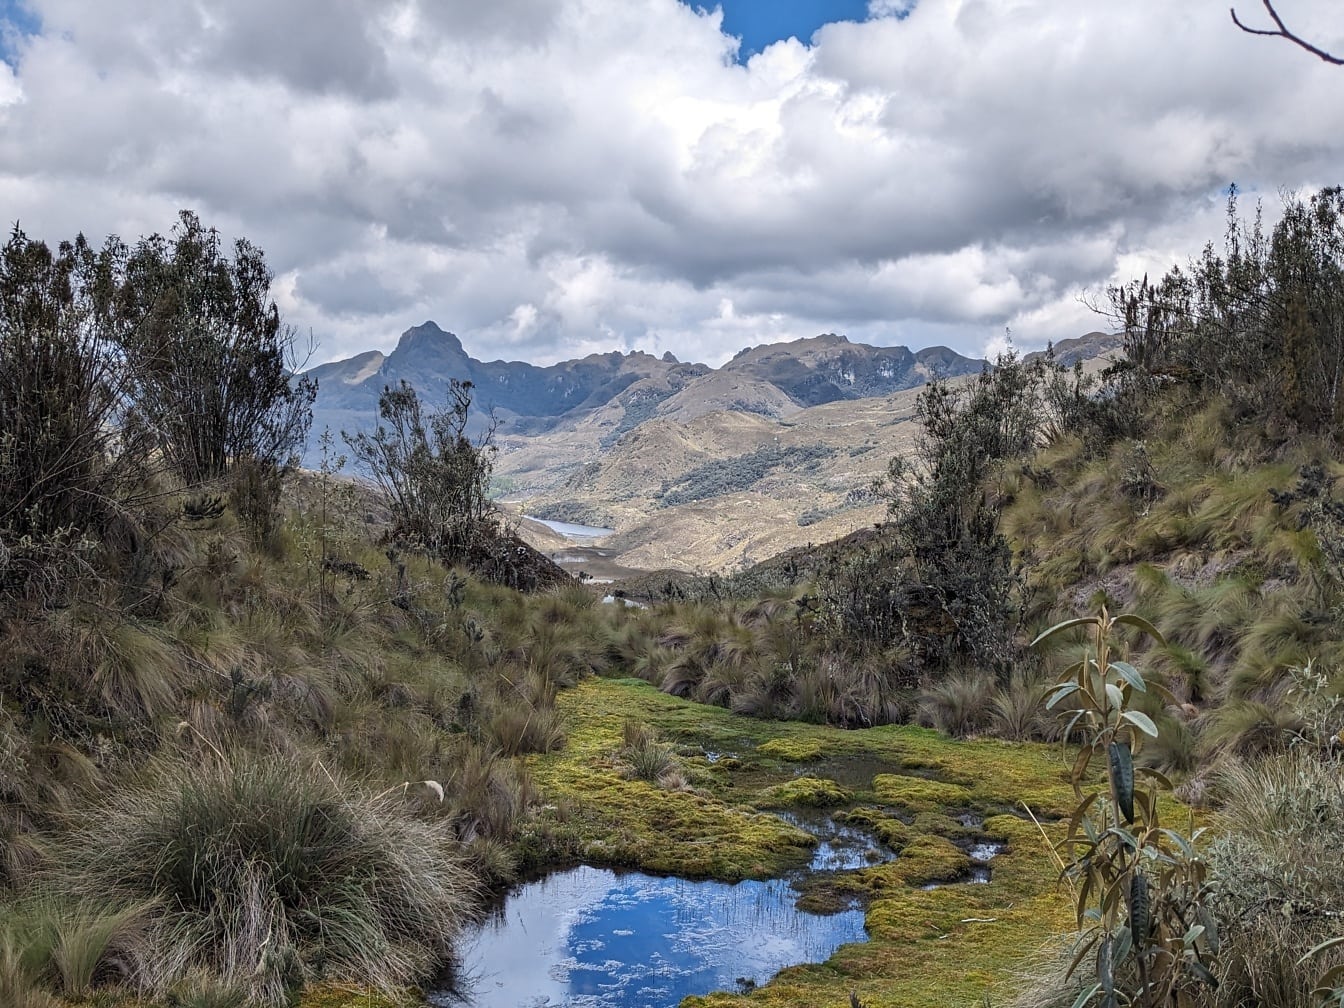 Lille bæk i en dal med bjerge i baggrunden ved naturparken Cajes i Ecuador